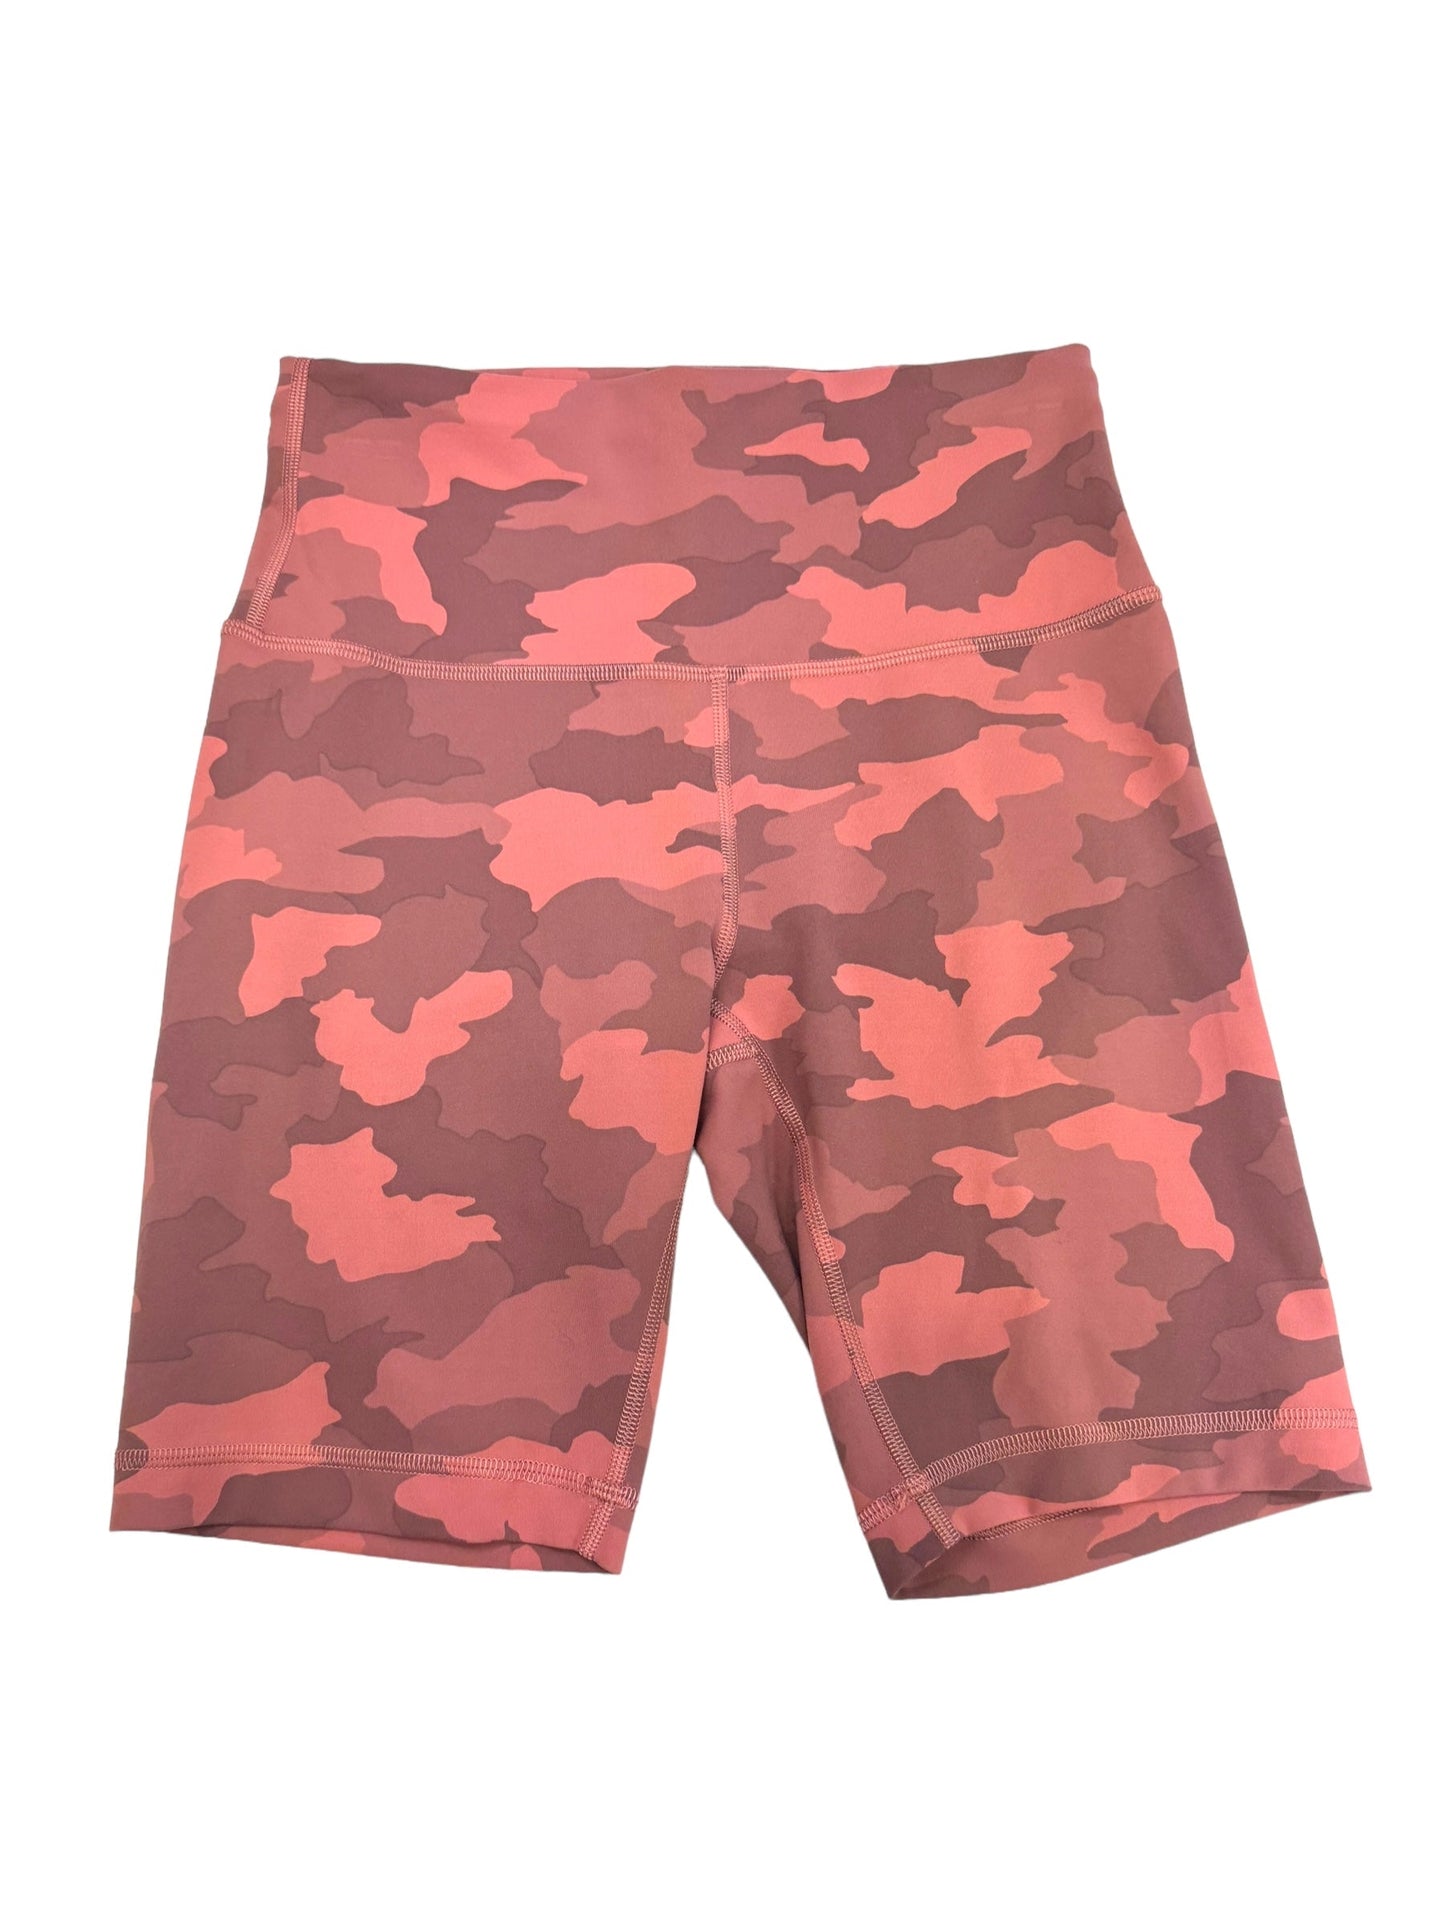 Pink Athletic Shorts Lululemon, Size S